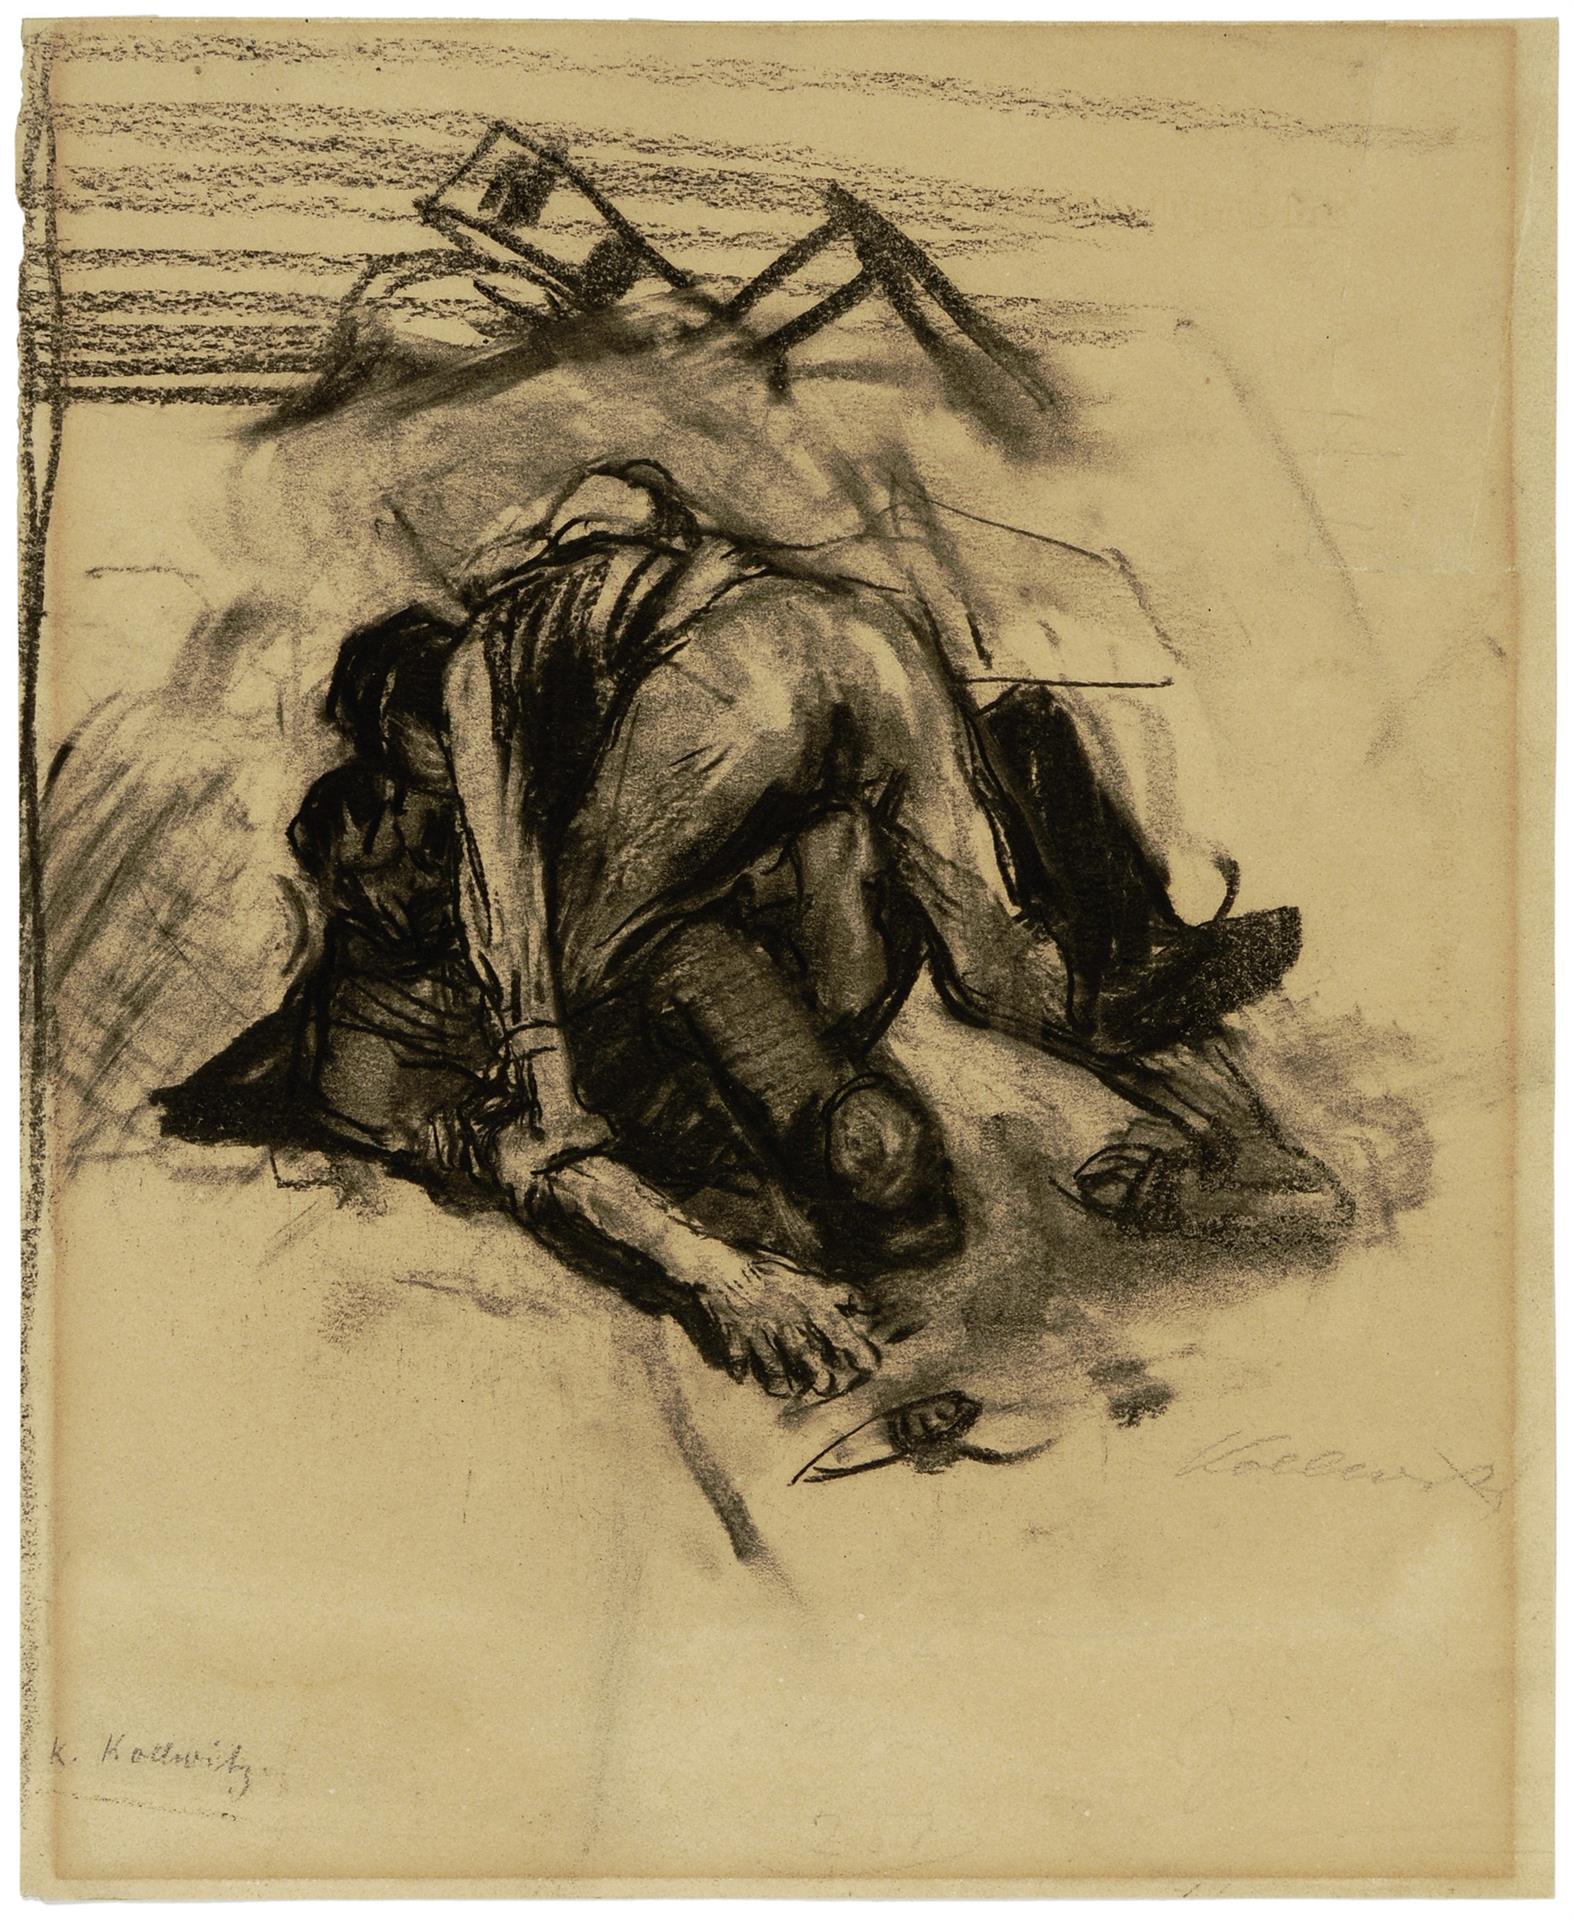 Käthe Kollwitz, Detailstudie zu Szene aus Germinal, 1892/93, Kohlezeichnung, NT (82a)